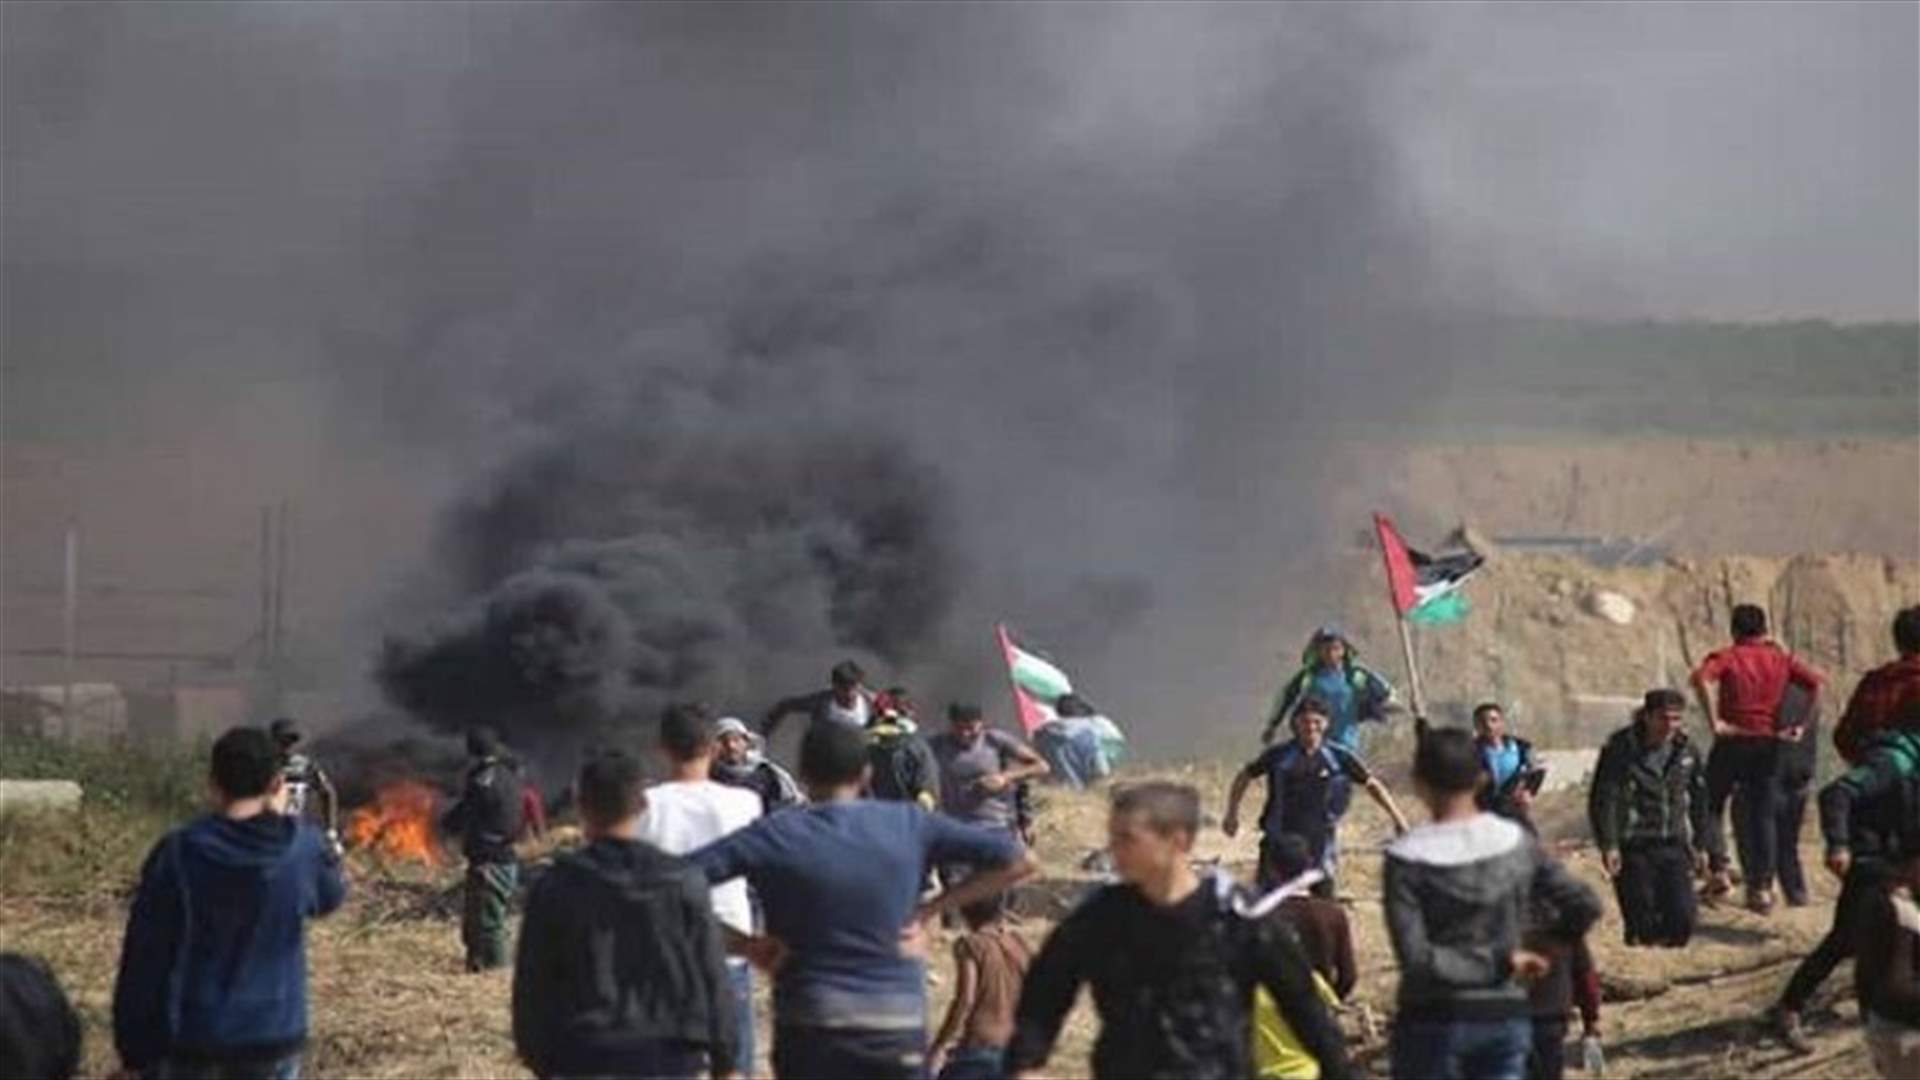 Israeli forces kill Palestinian man during Gaza protests -medics